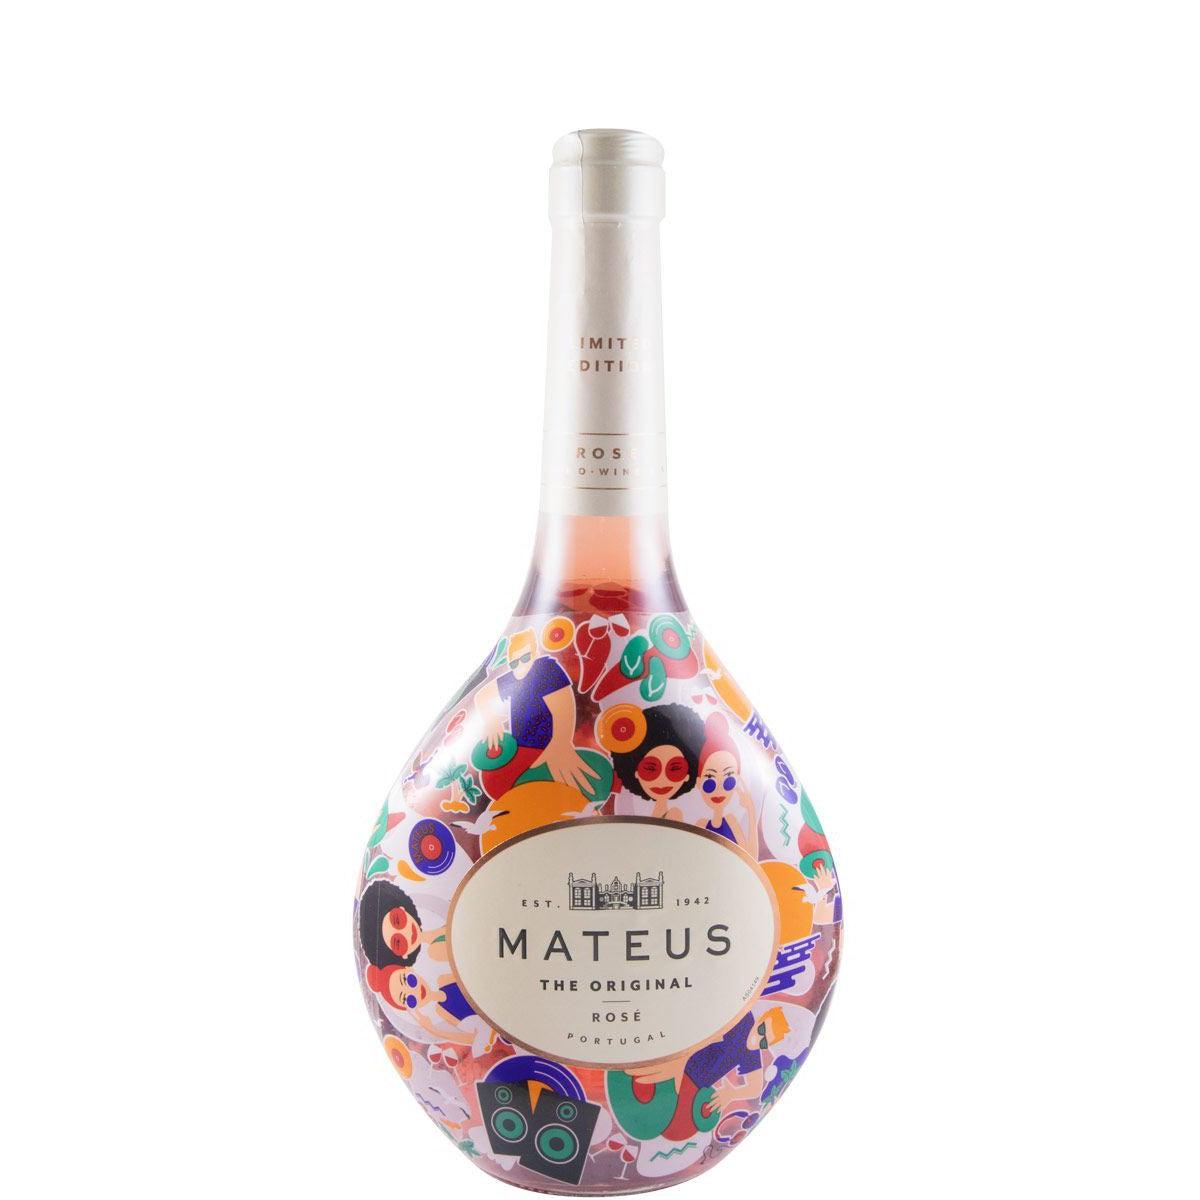 Mateus - Rosé Original, Vin rosé du Portugal (6 x 0,75l) 